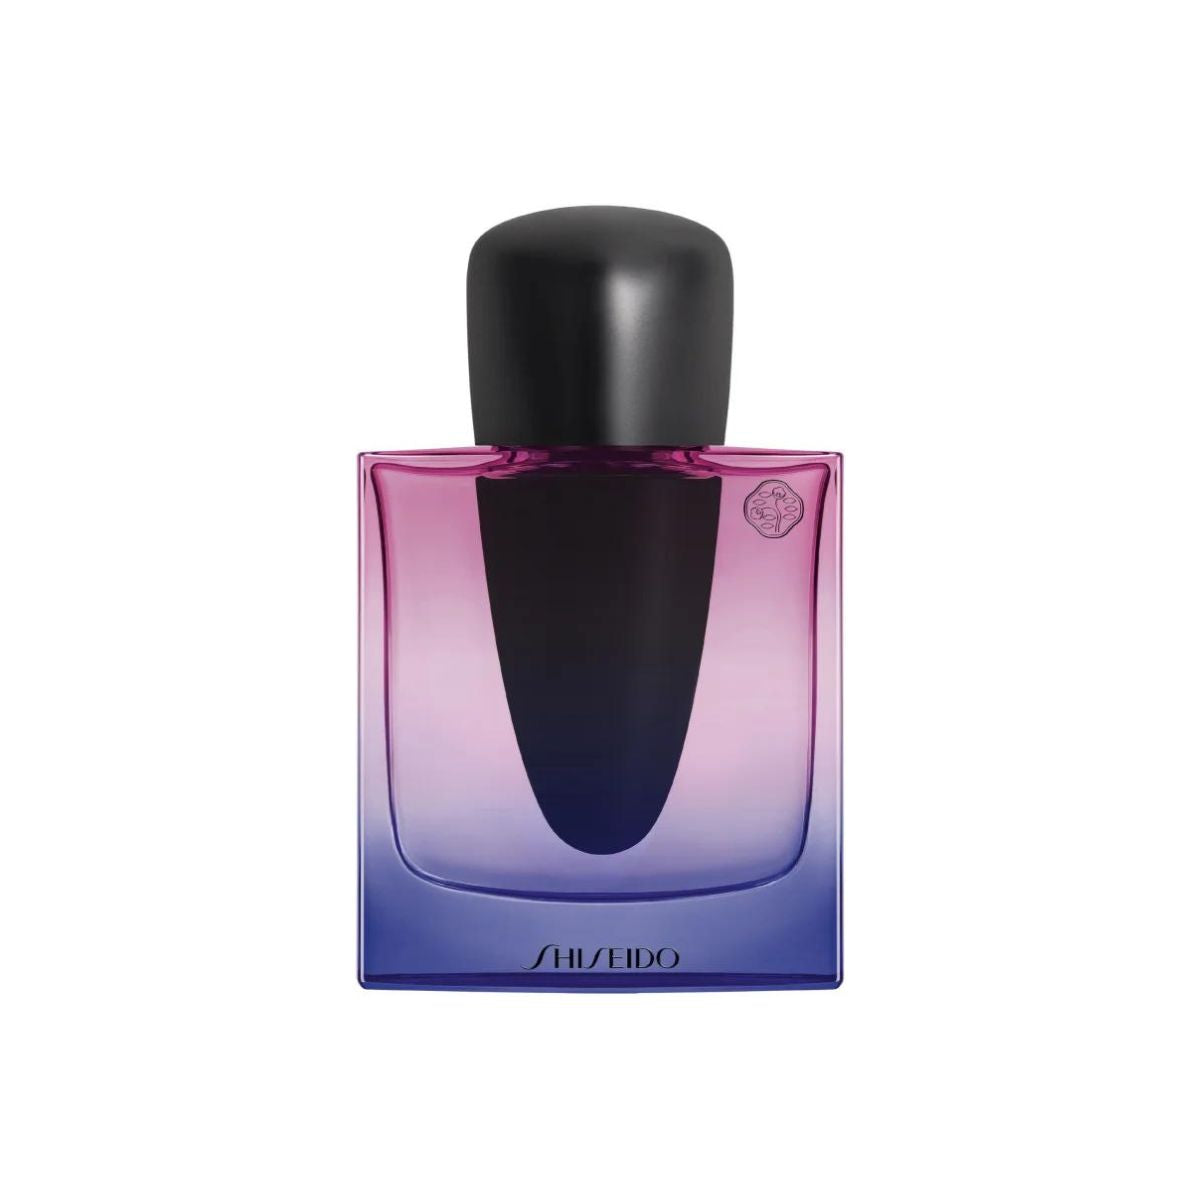 Shiseido Ginza Night Eau de Parfum Intense 50ml